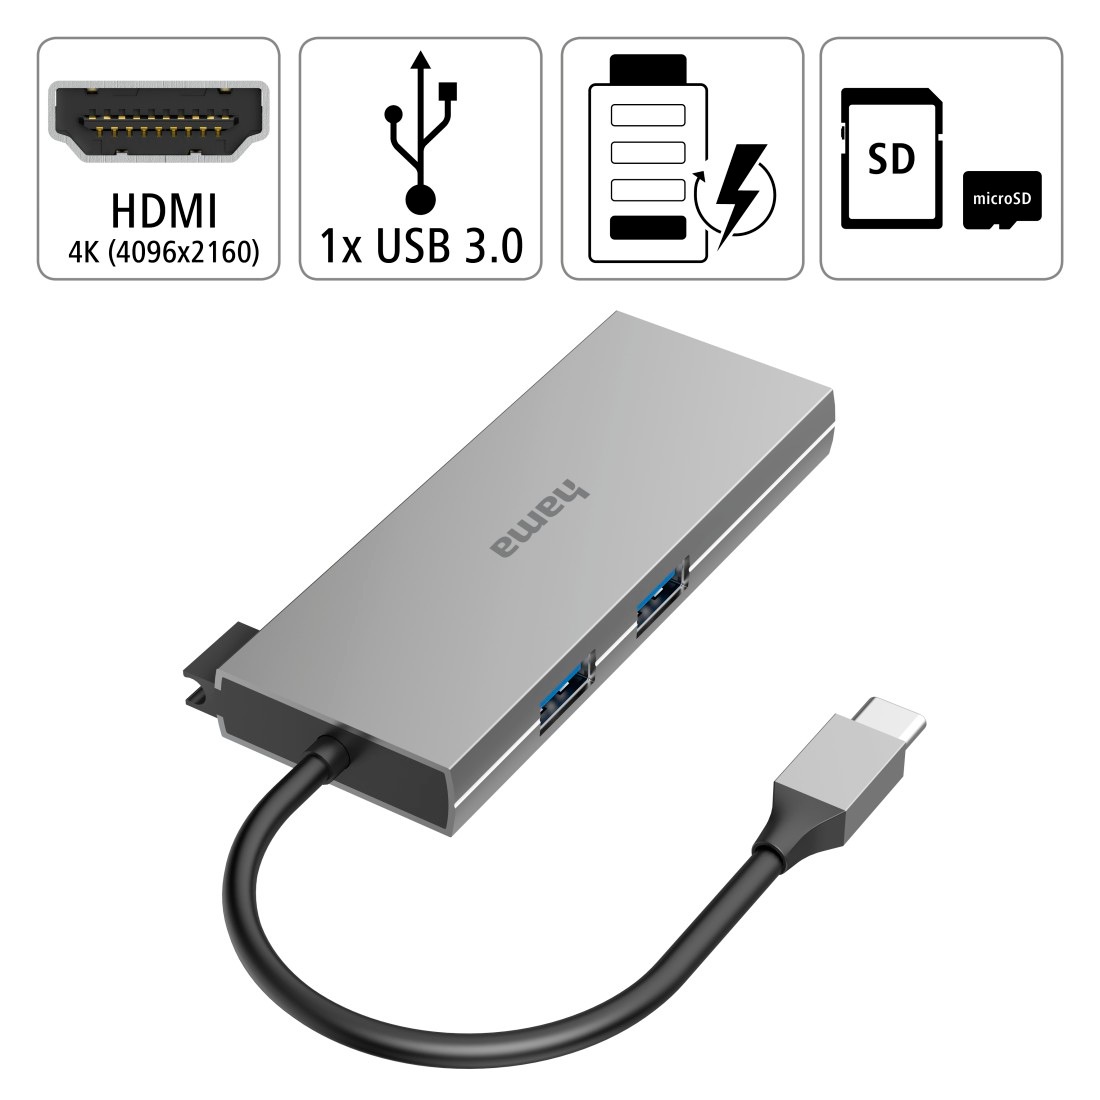 Hama USB-Adapter »USB-C Multiport Hub Laptop mit 6 Ports, USB-A, USB-C, HDMI, SD microSD«, USB-C zu USB Typ A-USB Typ C-HDMI-SD-Card, 15 cm, Laptop Dockingstation, kompakt, robustes Gehäuse, silberfarben